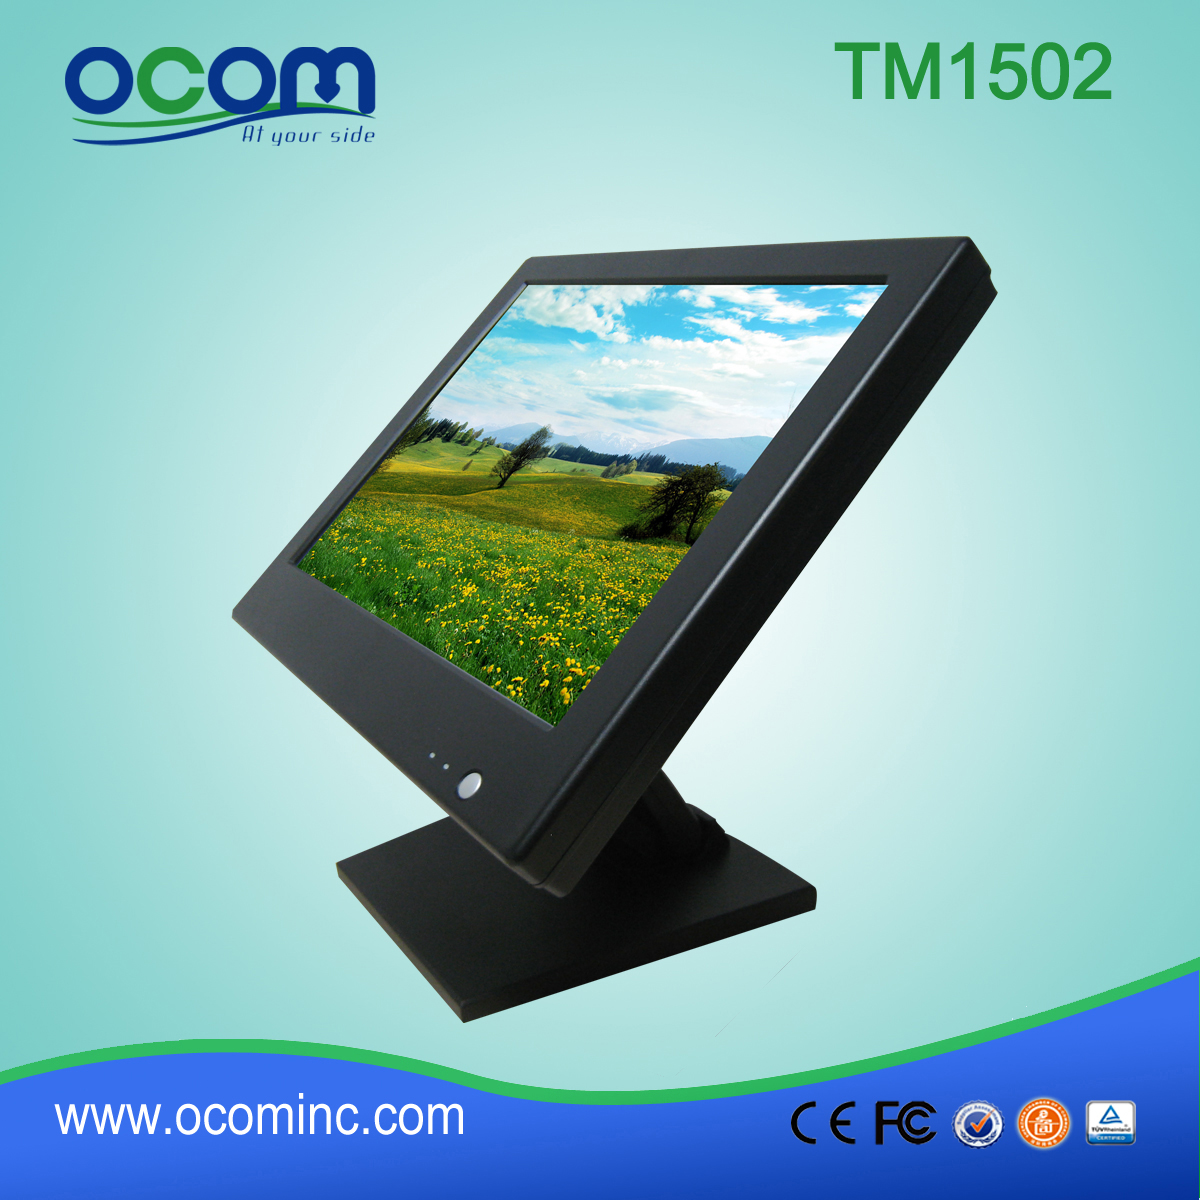 TM1502 Feito em China LED Touch Monitor preço